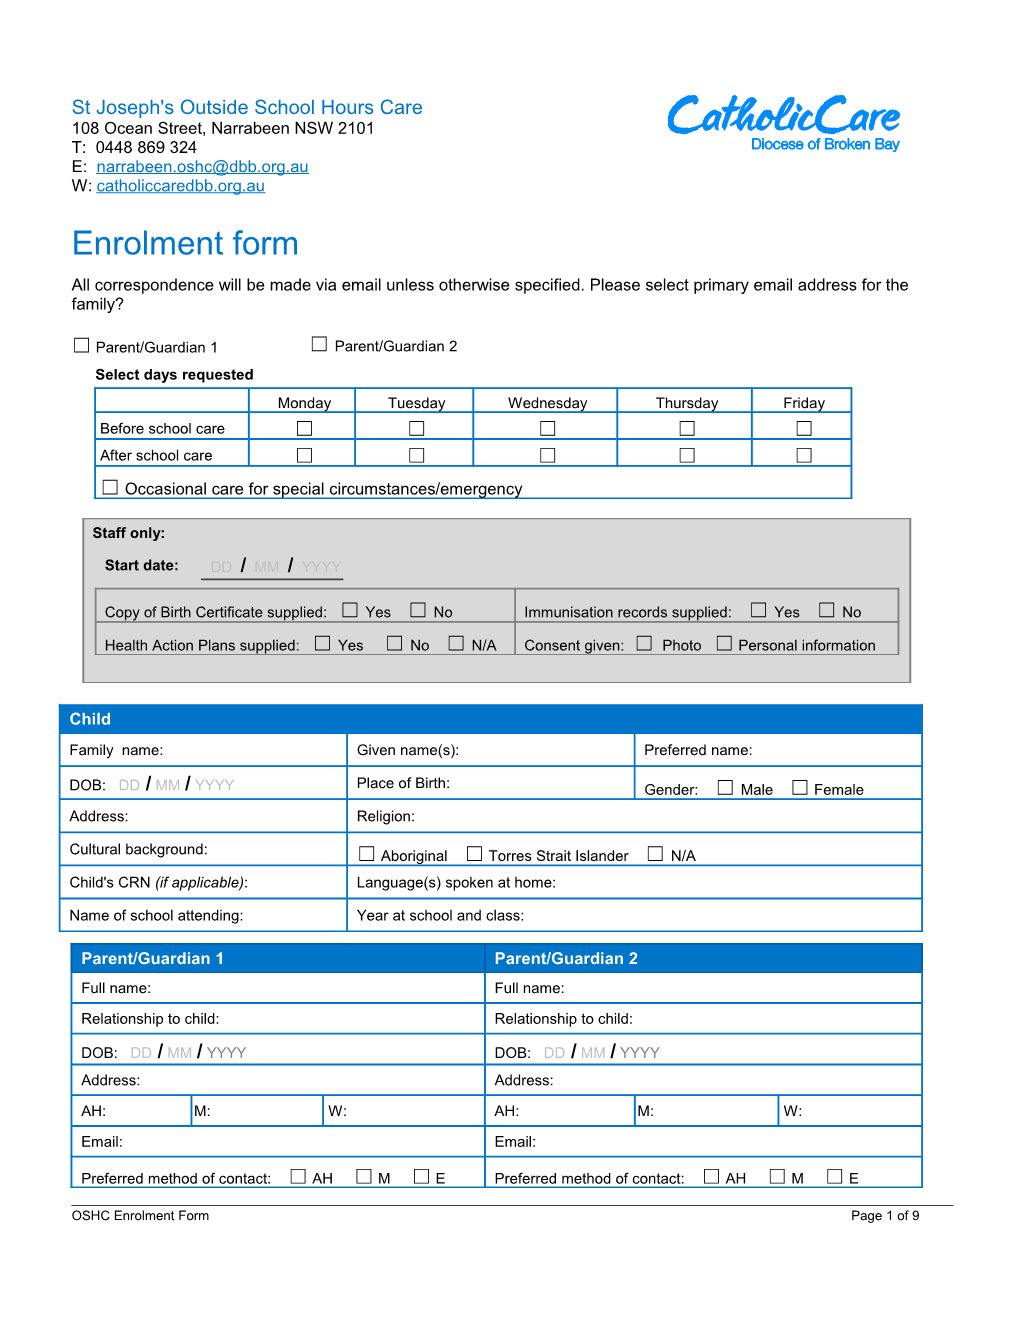 OSHC Enrolment Form